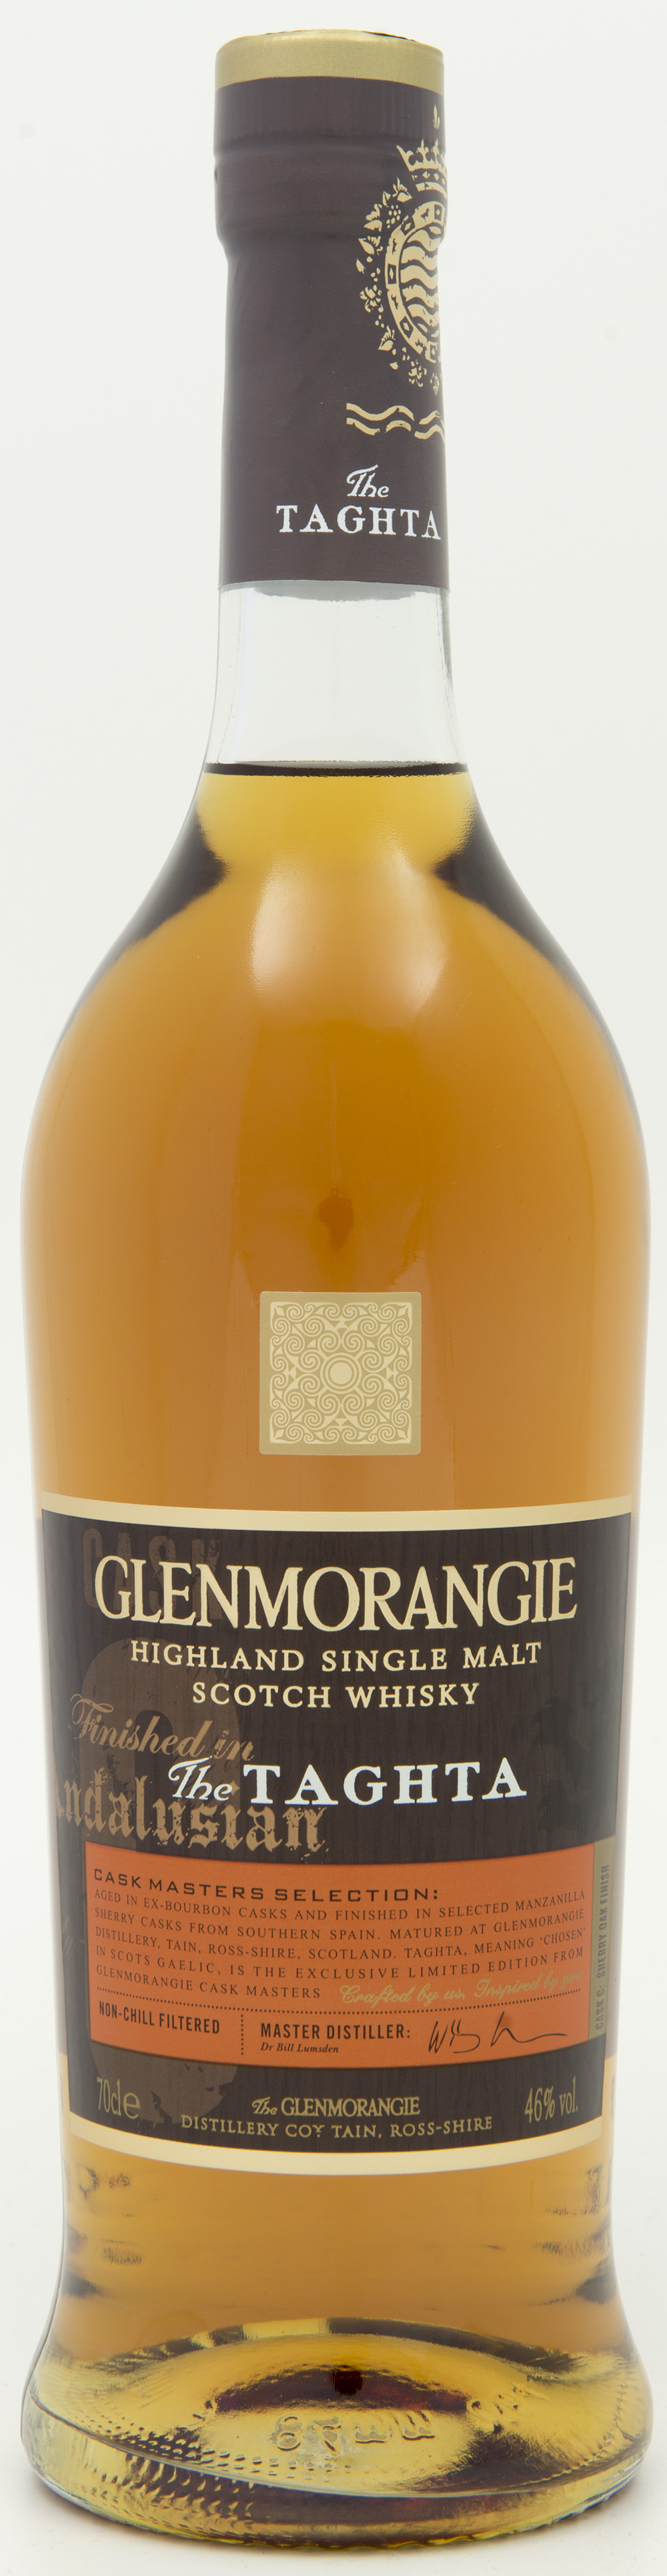 Billede: DSC_8191 - Glenmorangie The Taghta - bottle front.jpg